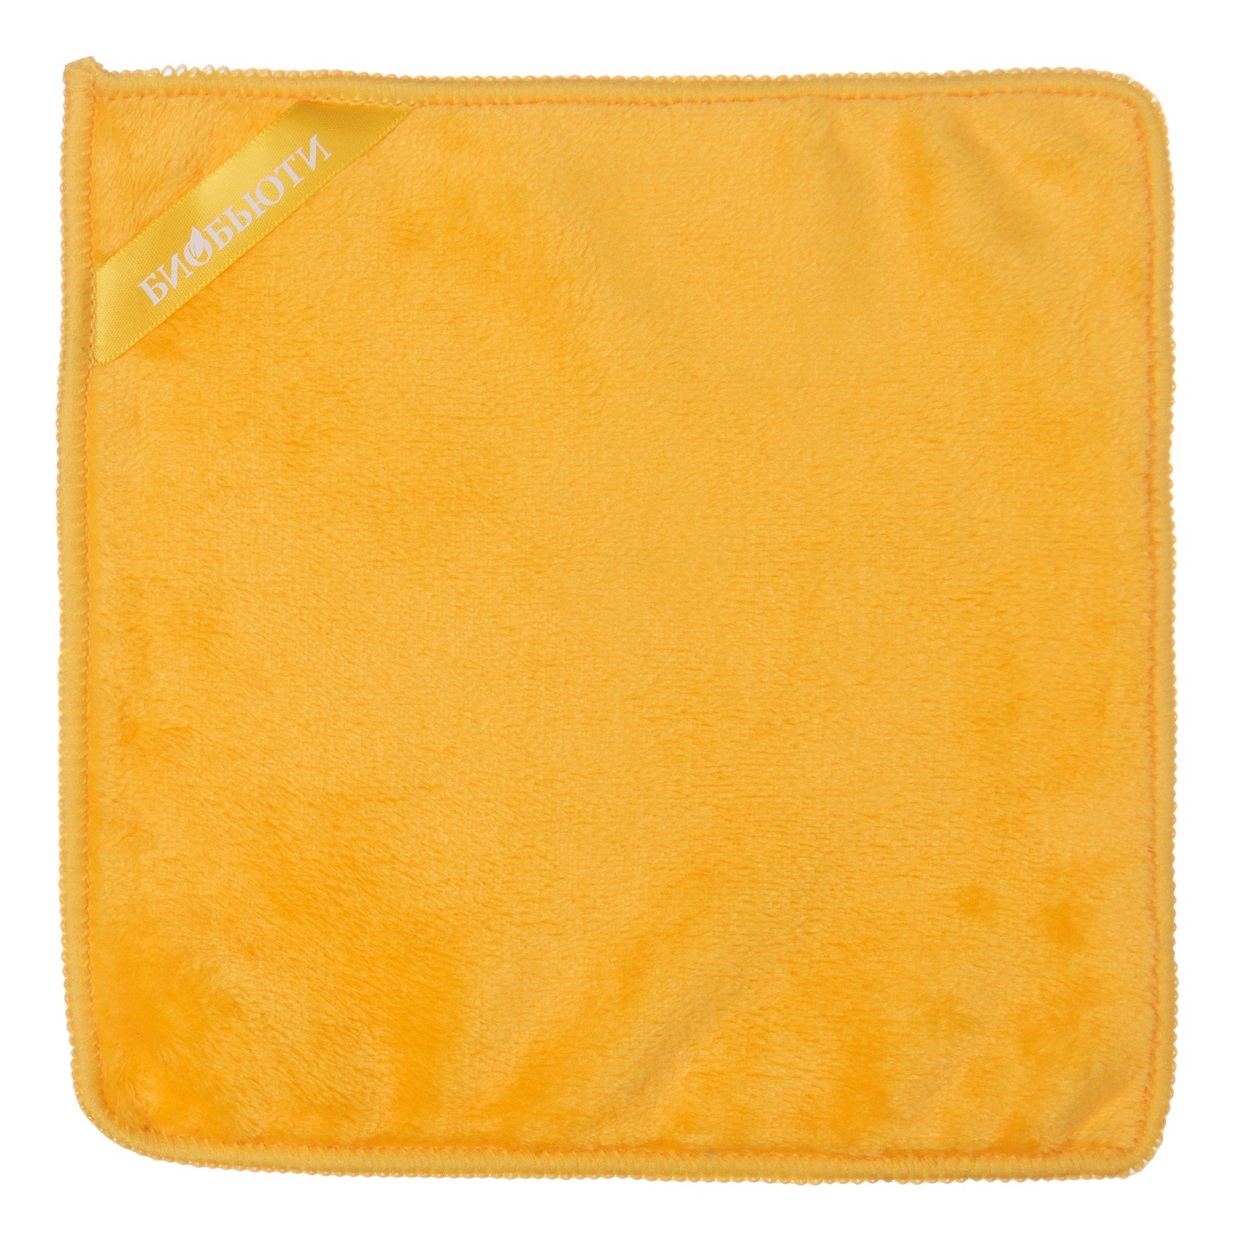 Биобьюти Салфетка для умывания и снятия макияжа желтая, 20 x 20 см (Биобьюти, Аксессуары)